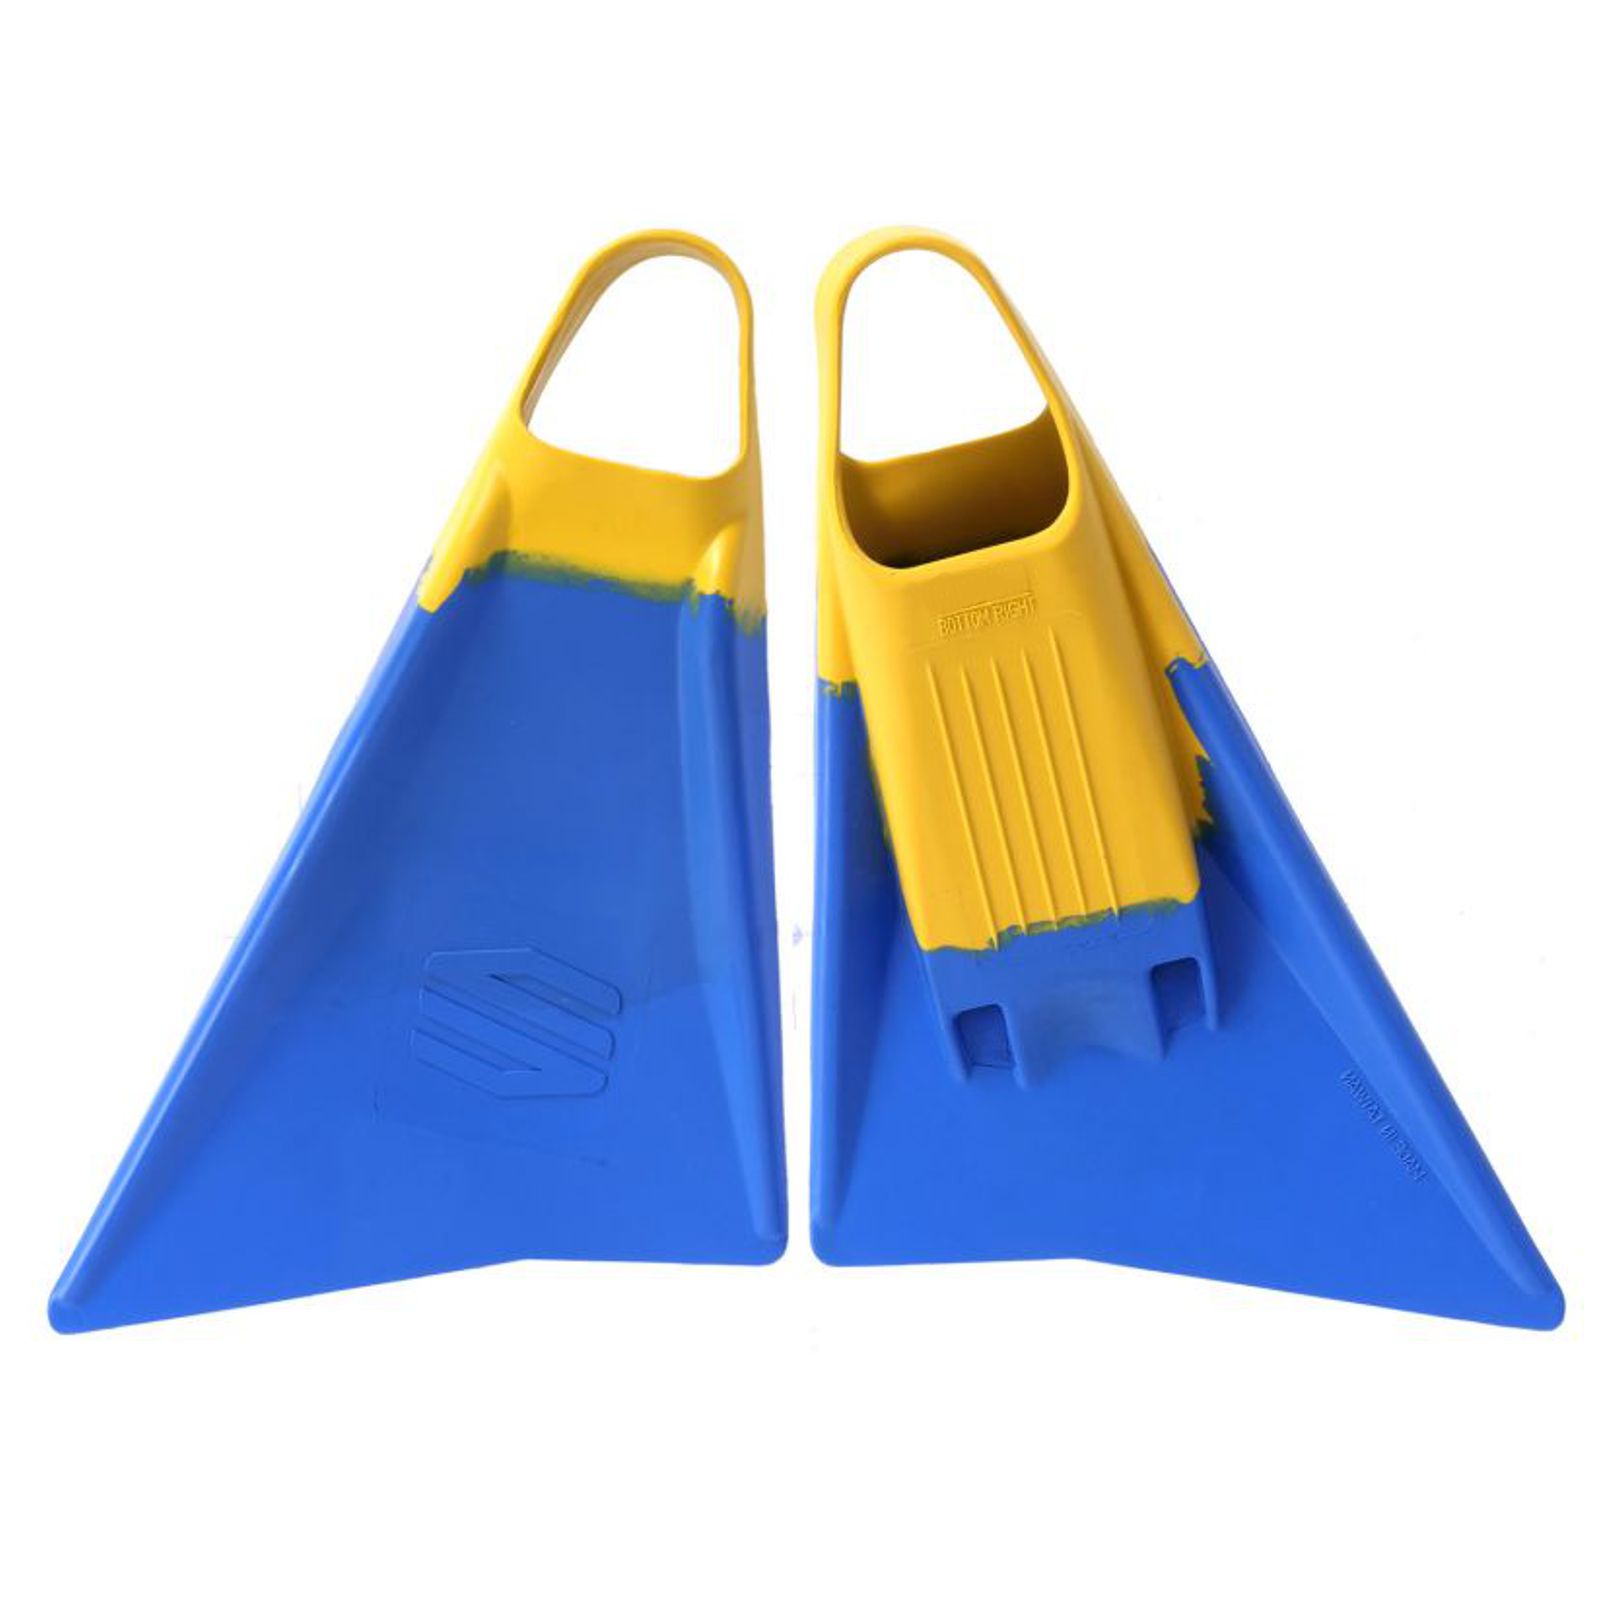 SNIPER Aletas Bodyboard Menace M 40-42 Azul Amarillo • Seguridad los deportes acuáticos